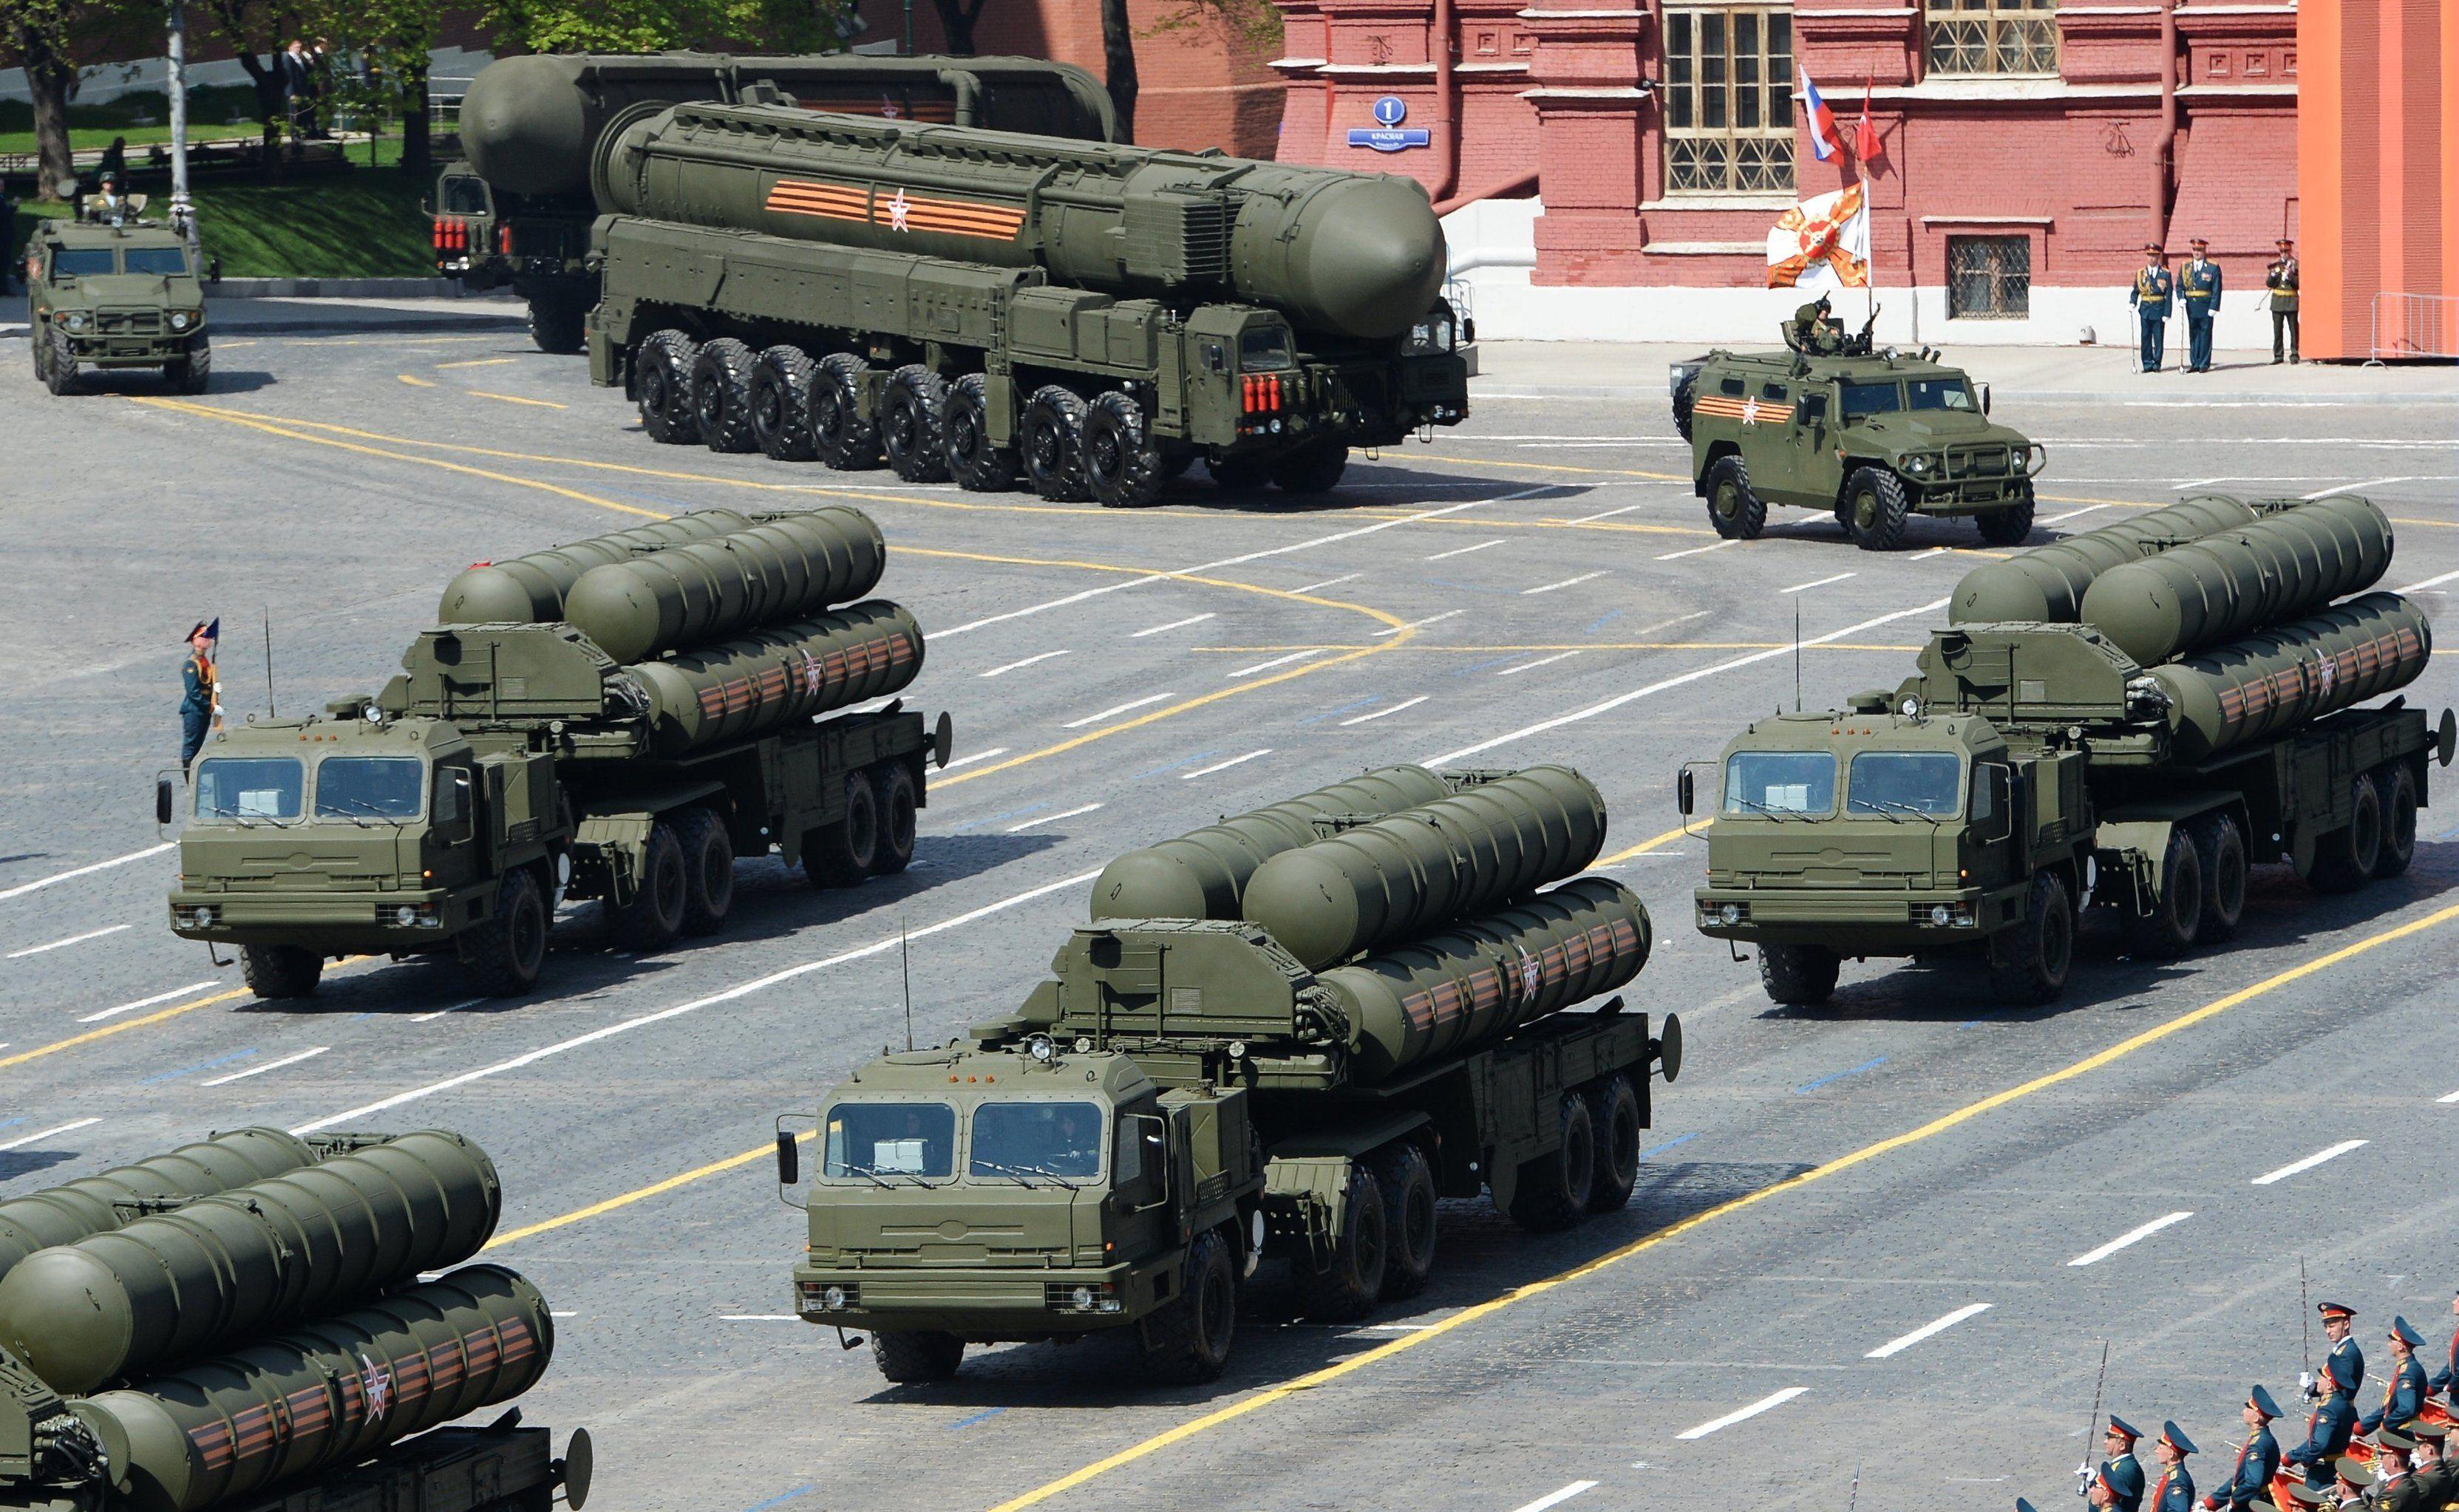 Военно-техническое сотрудничество России и Беларуси: перспективы и риски